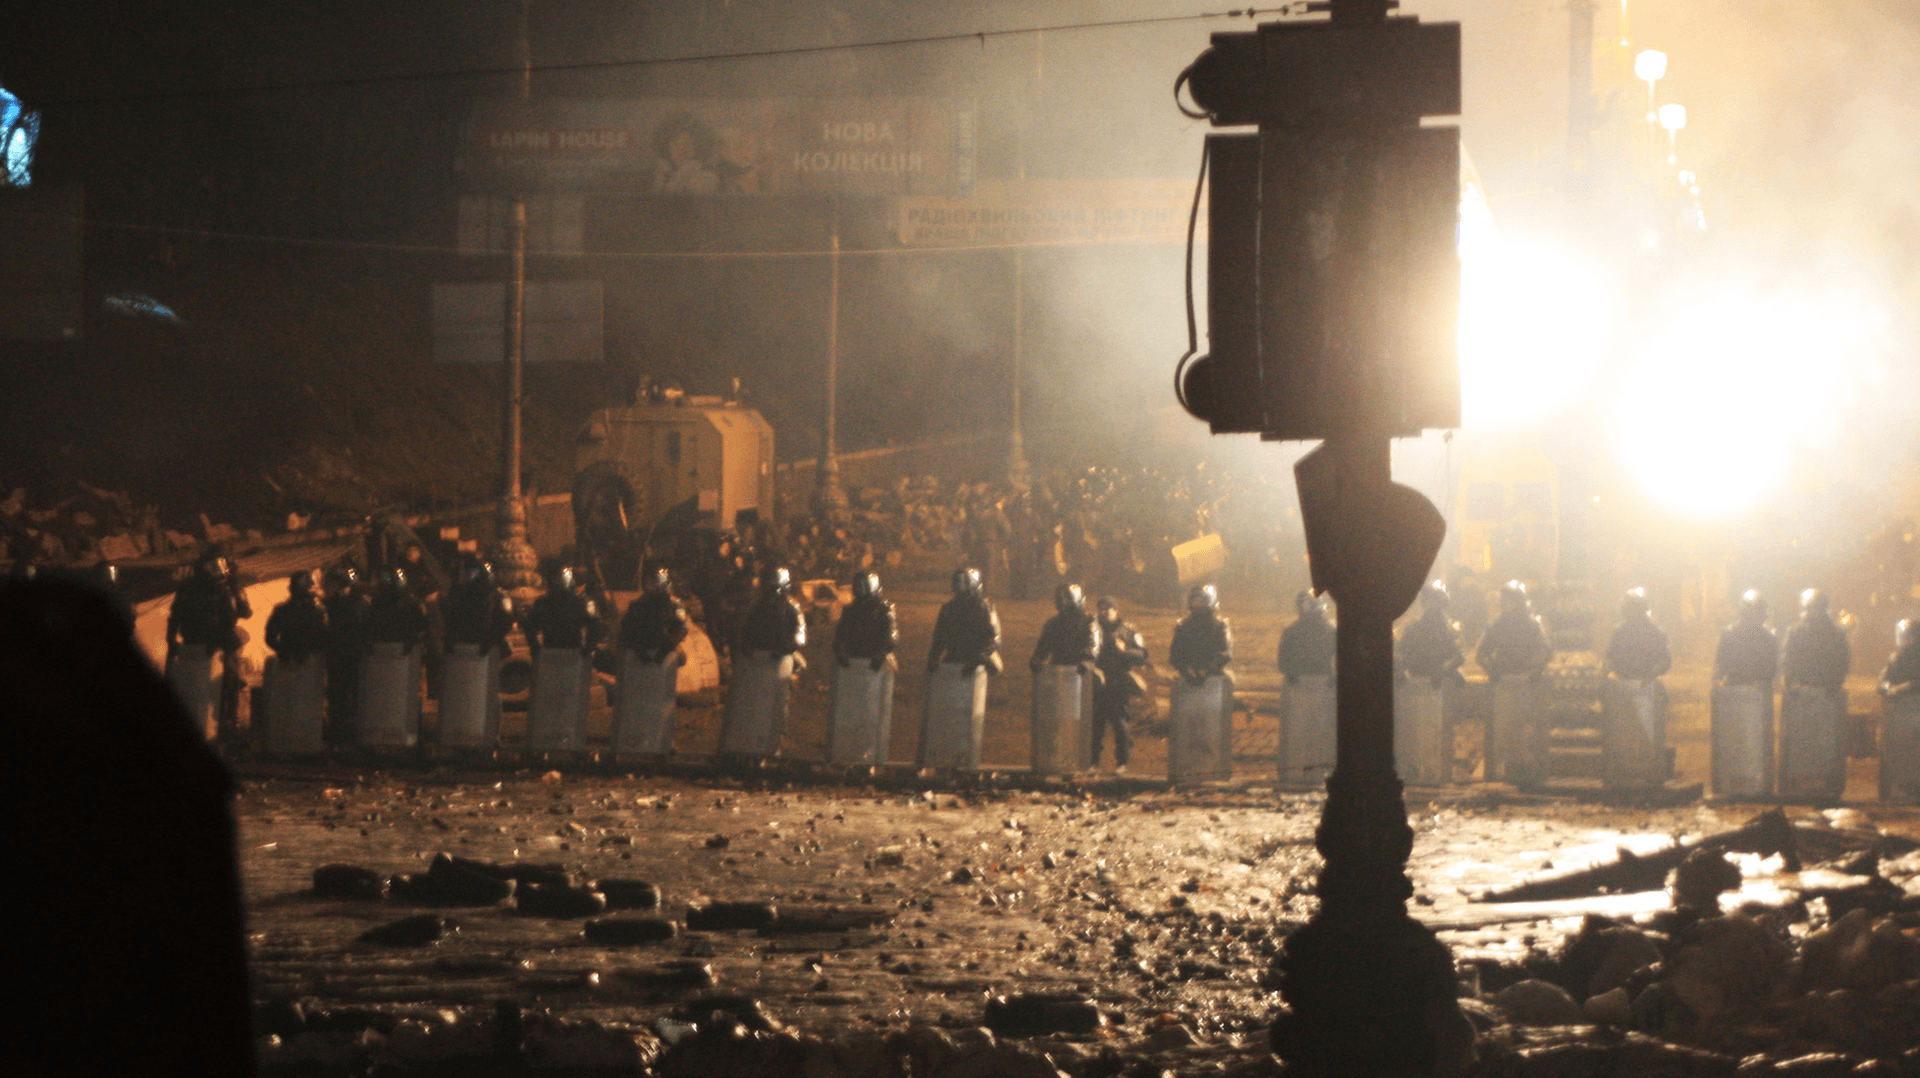 Über Wochen standen sich Demonstranten und Polizei bei den Euromaidan-Protesten in Kiew gegenüber wie hier am 13. Februar 2014. Da ahnte noch niemand, welche gewaltvollen Ereignisse sich wenige Tage später ereignen.